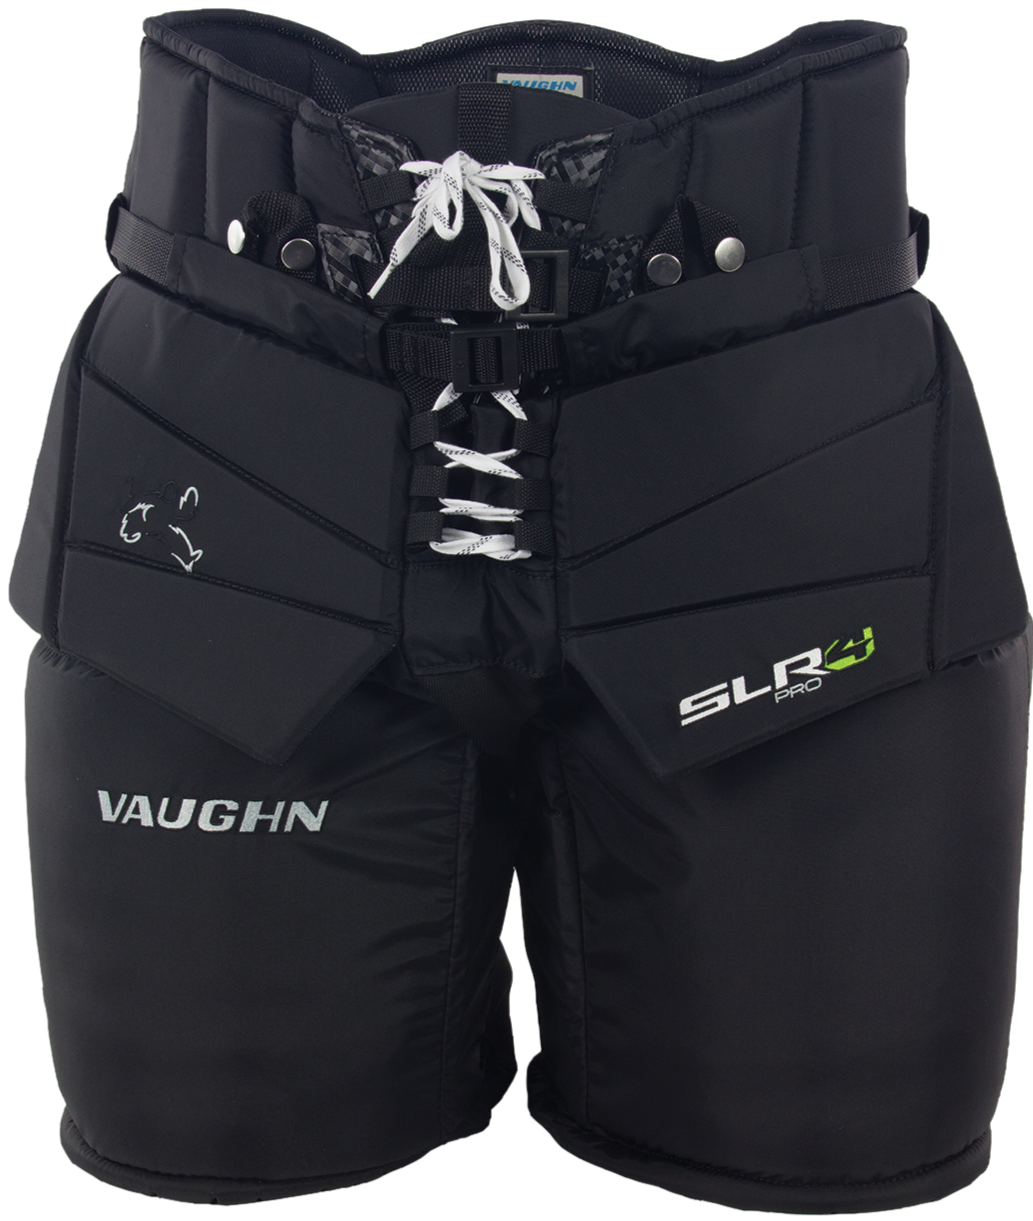 Vaughn SLR4 Pro Senior Goalie Pants